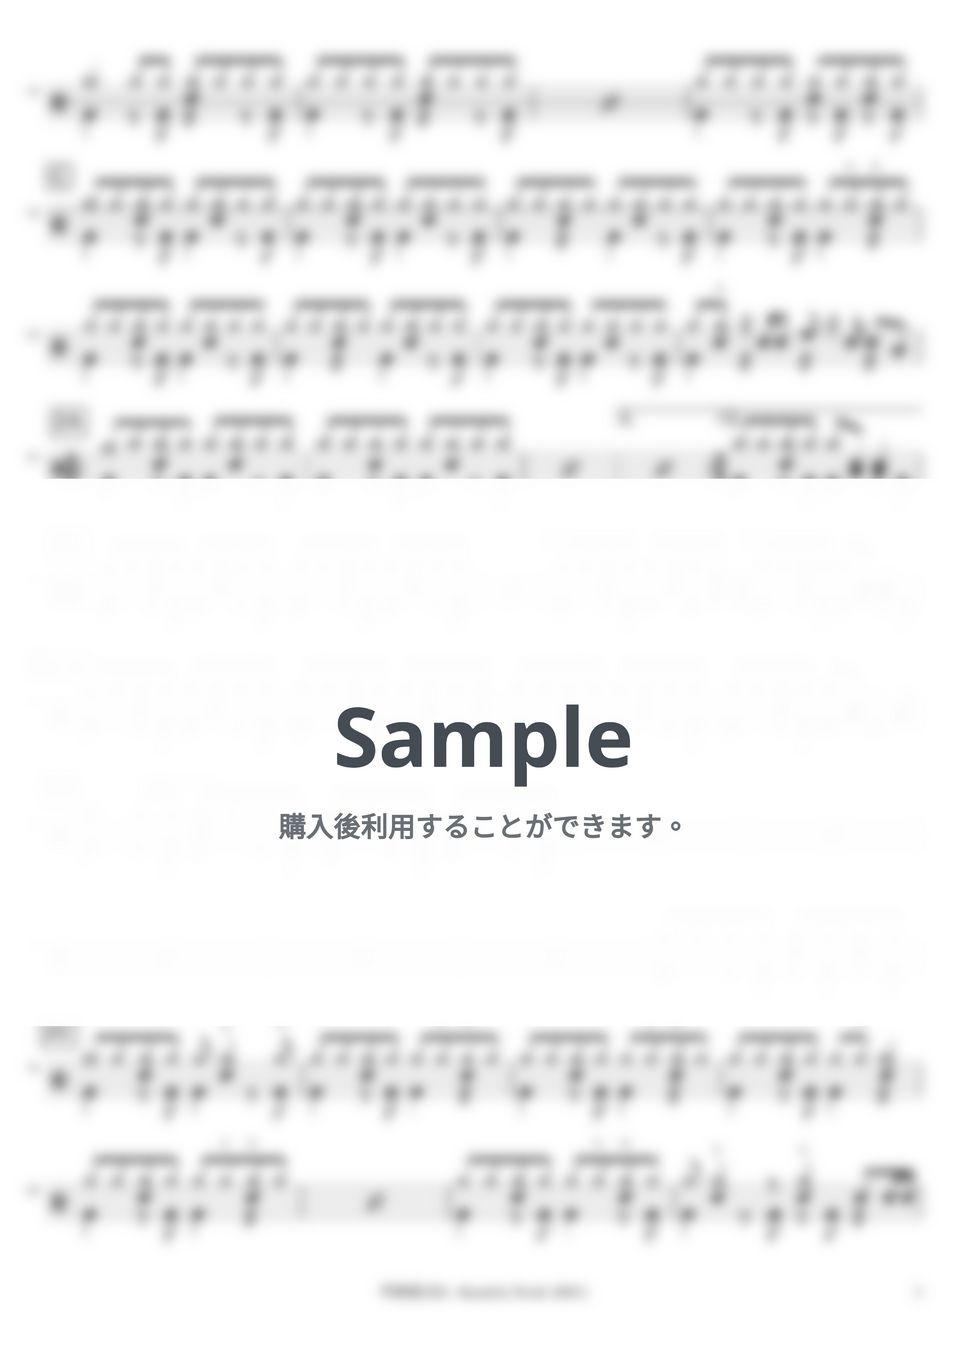 宇多田 ヒカル - Beautiful World -PLANiTb Acoustica Mix- by DSU